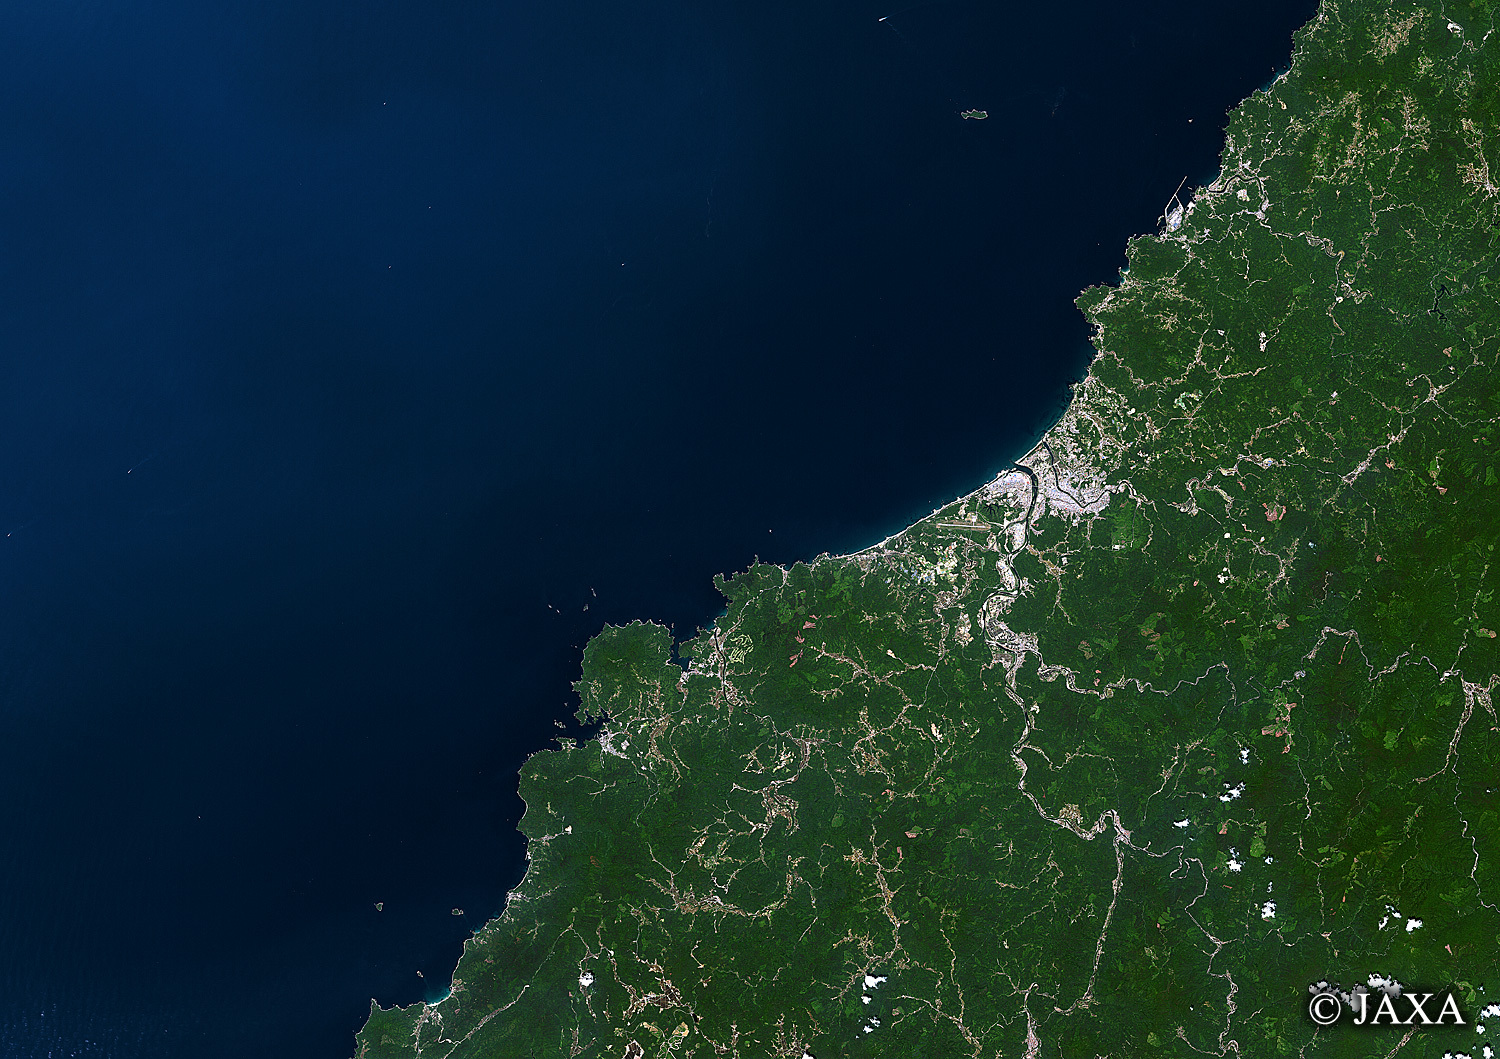 だいちから見た日本の都市 益田市:衛星画像